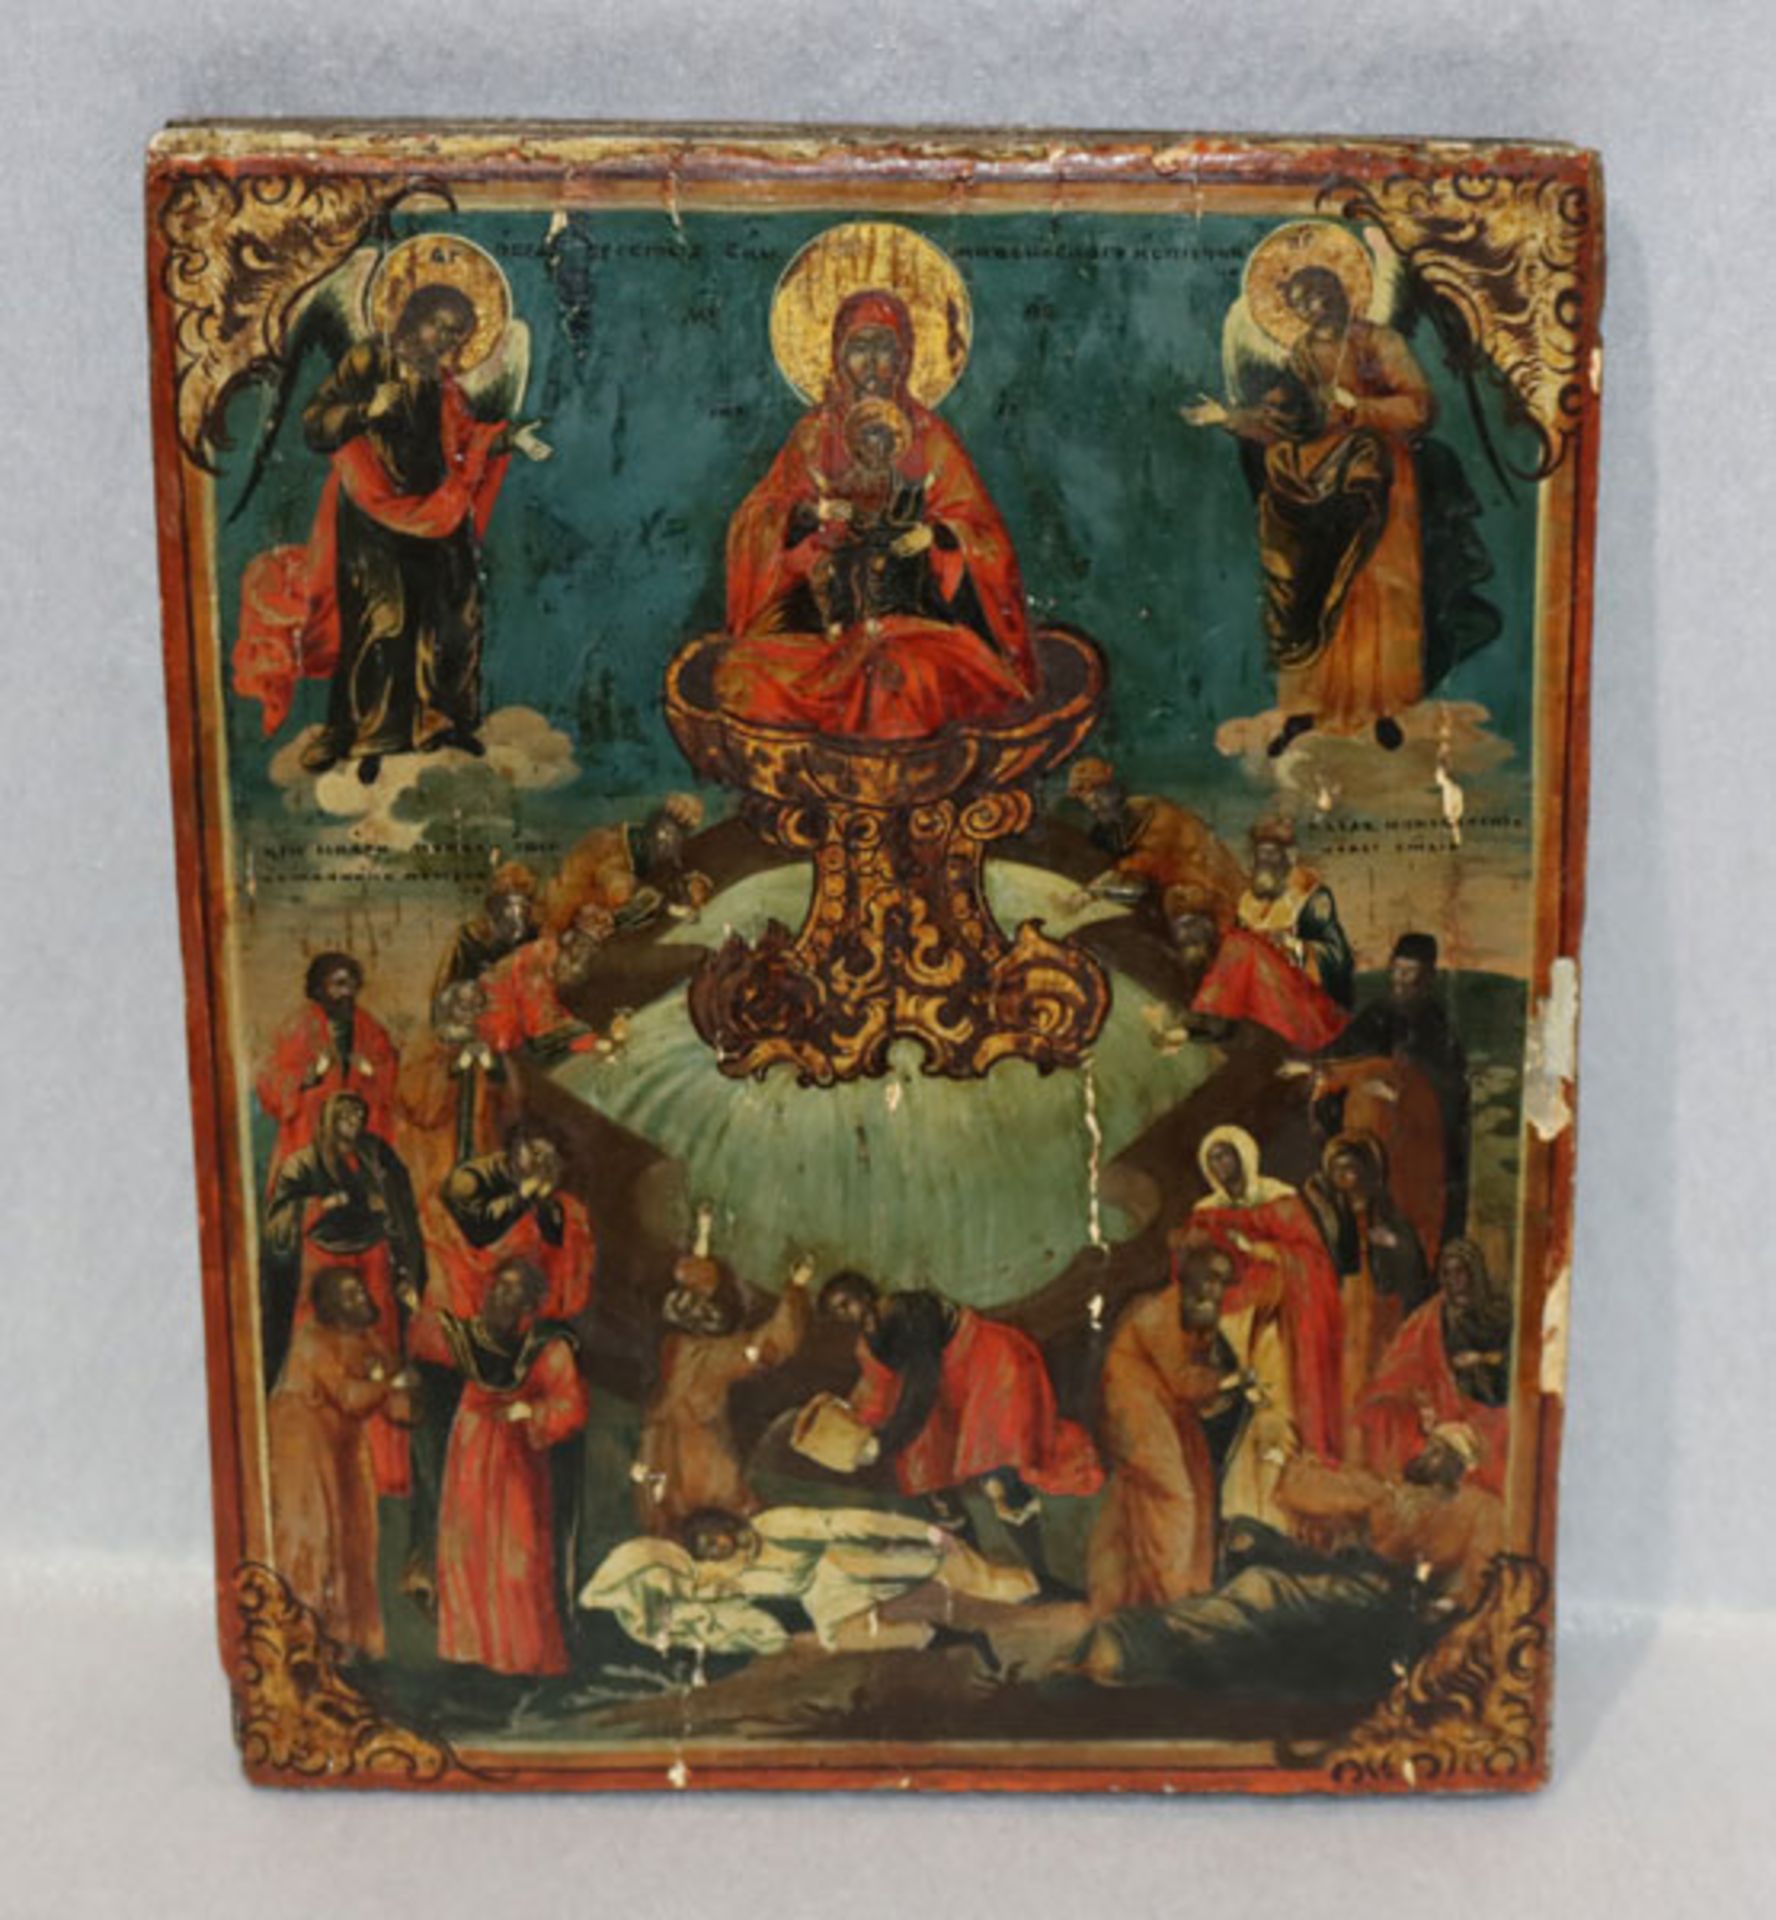 Ikone 'Religiöser Szenerie', Oberfläche beschädigt, teils mit Farbablösungen, 31,5 cm x 26 cm